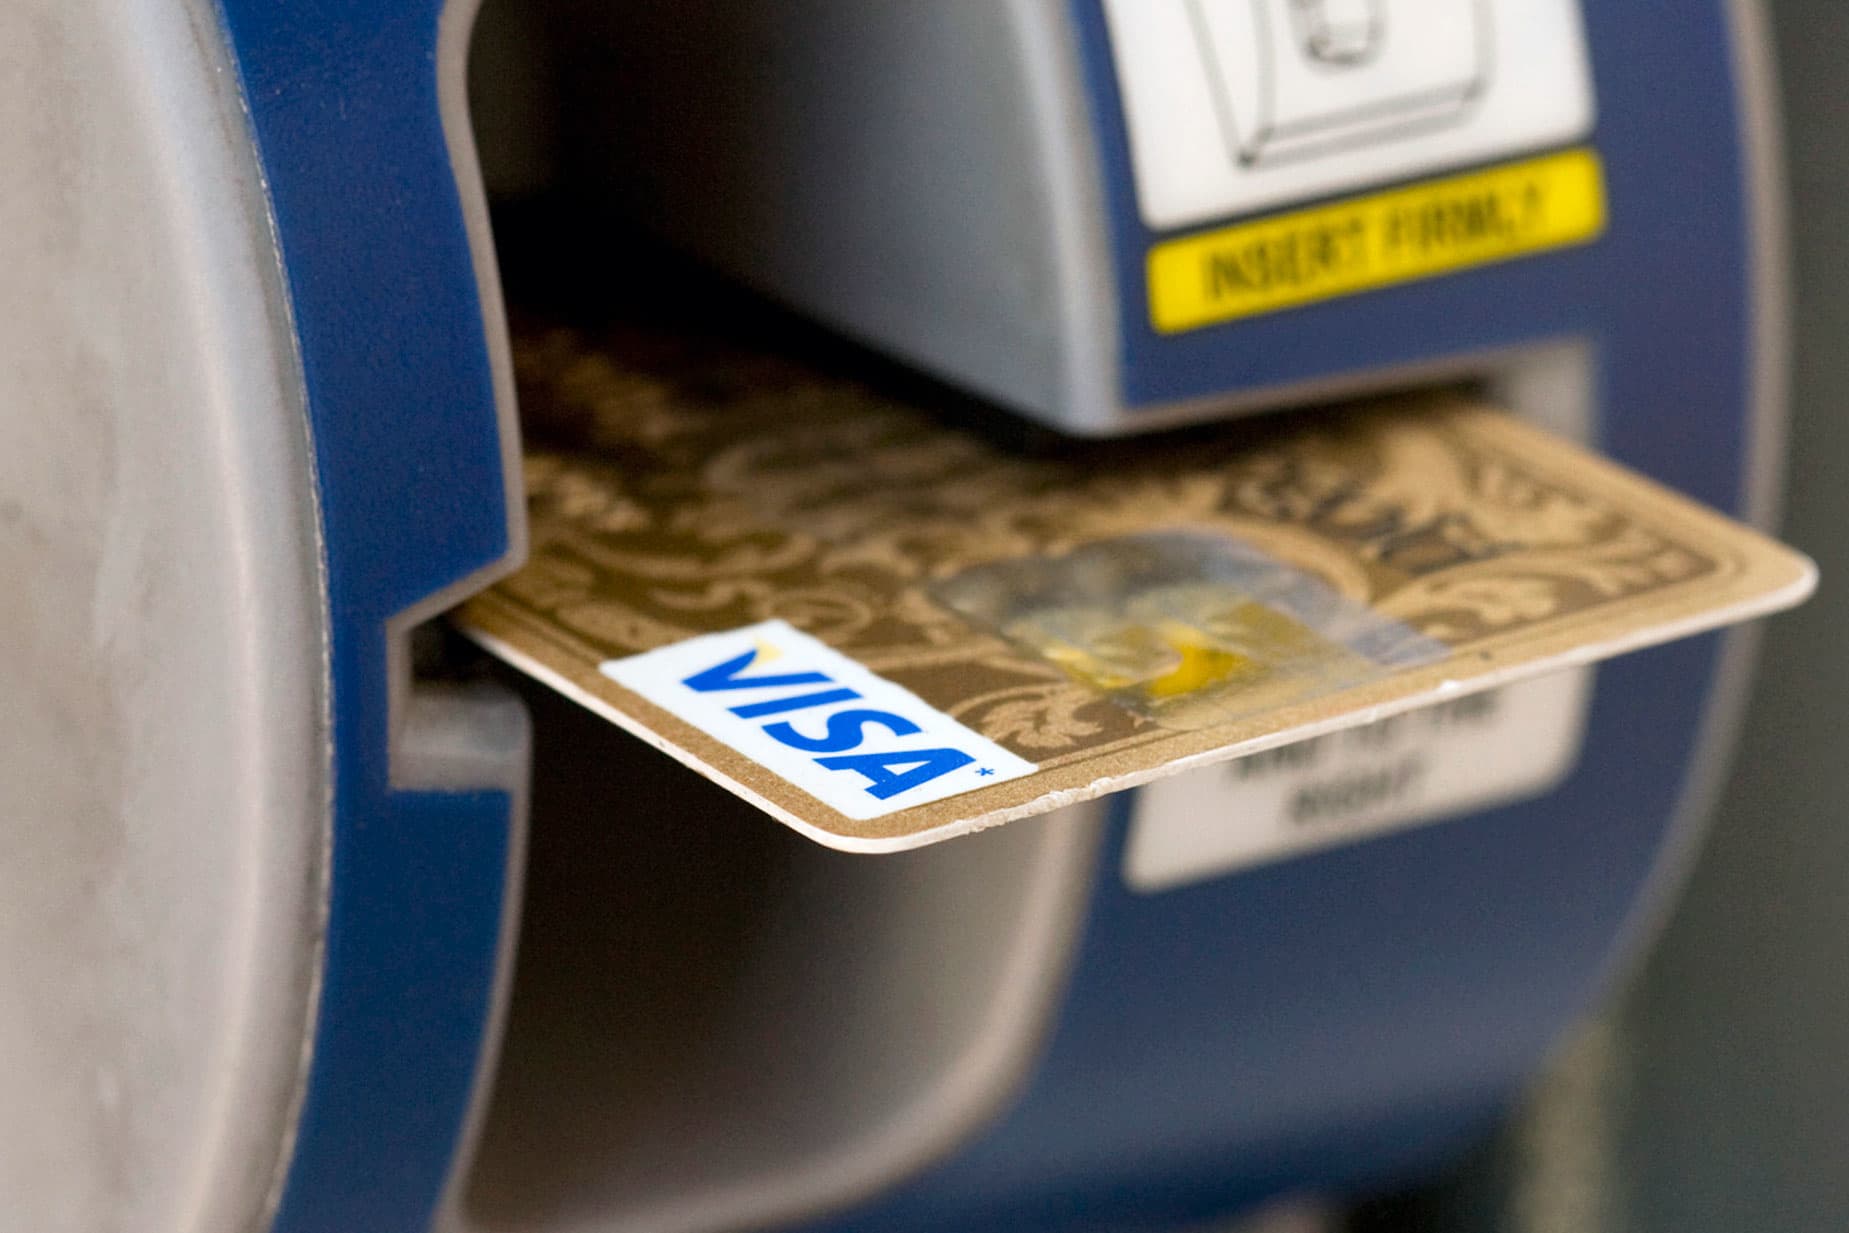 Visa drops after report says DOJ investigates debit card businesses